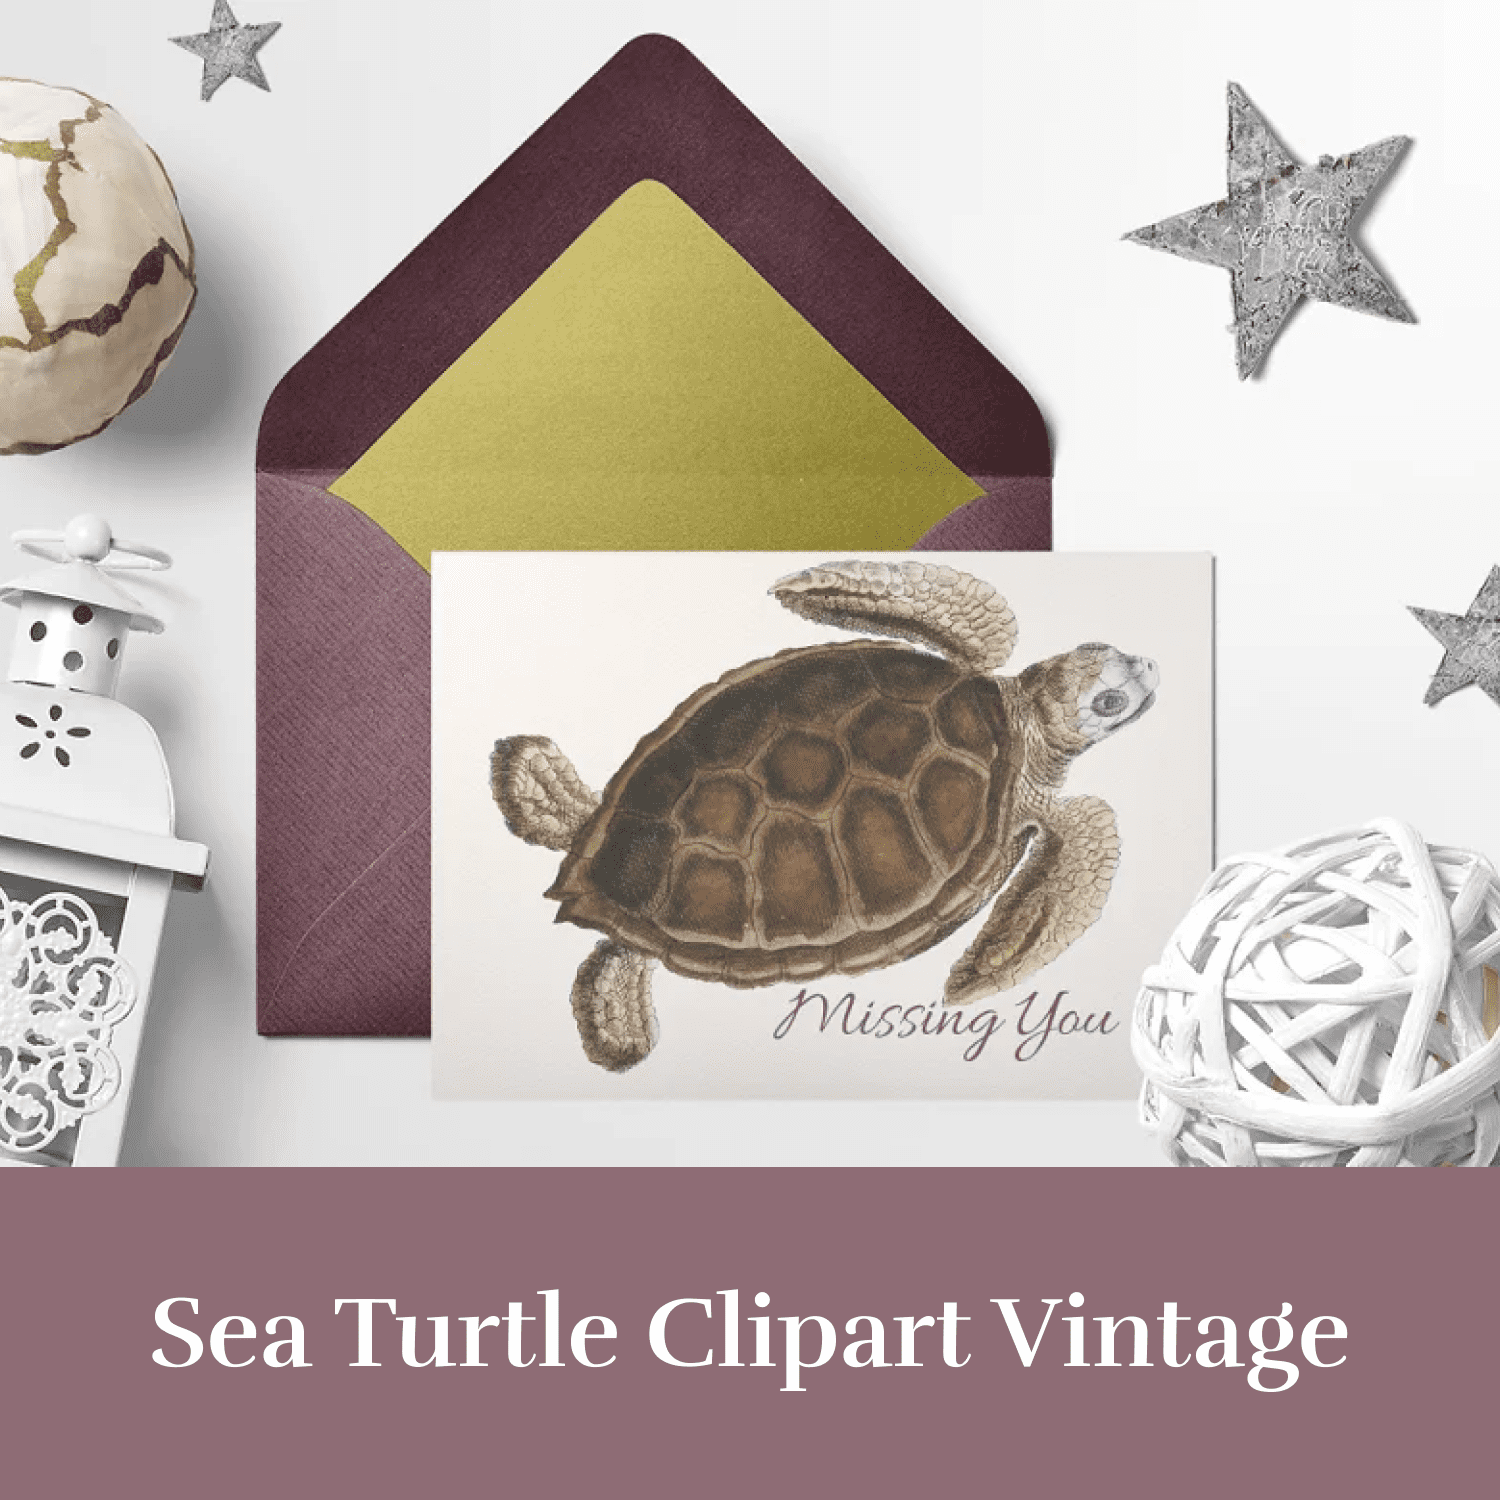 Sea Turtle Clipart Vintage.